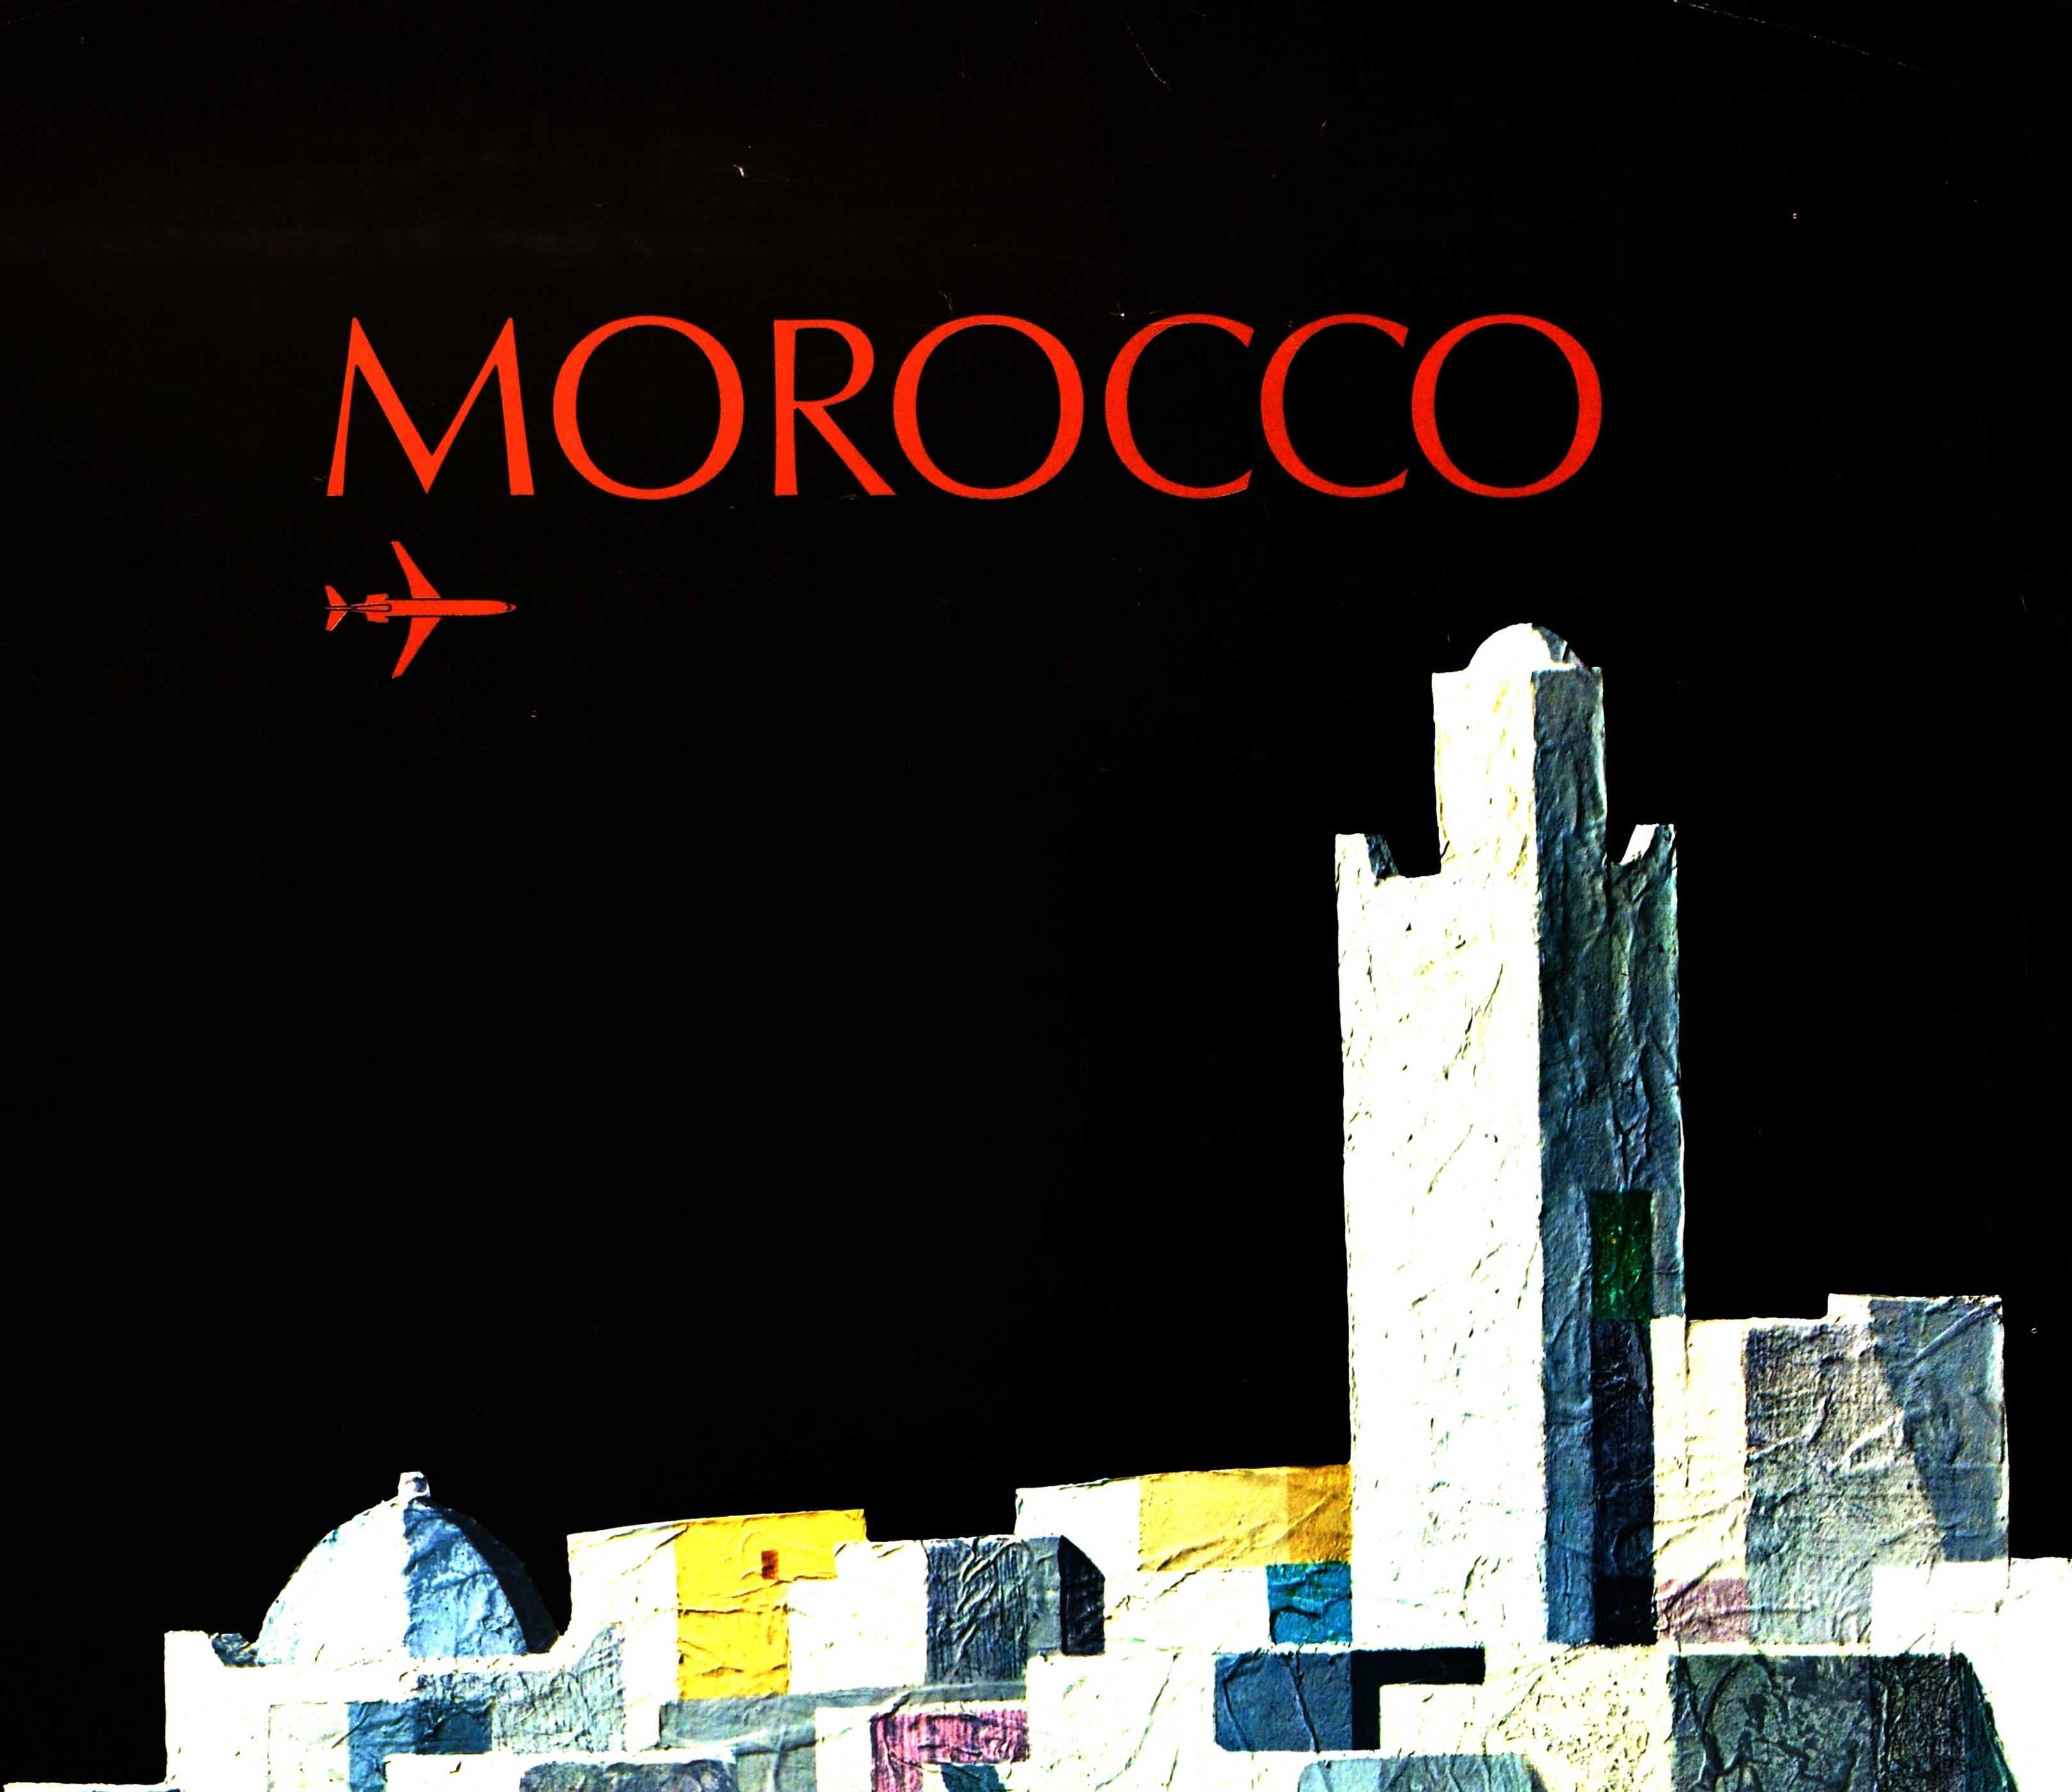 Affiche publicitaire originale pour la compagnie aérienne marocaine Royal Air Maroc Moroccan International Airlines, représentant des bâtiments marocains traditionnels avec un avion volant au-dessus de la tête et le texte en rouge en haut et en bas